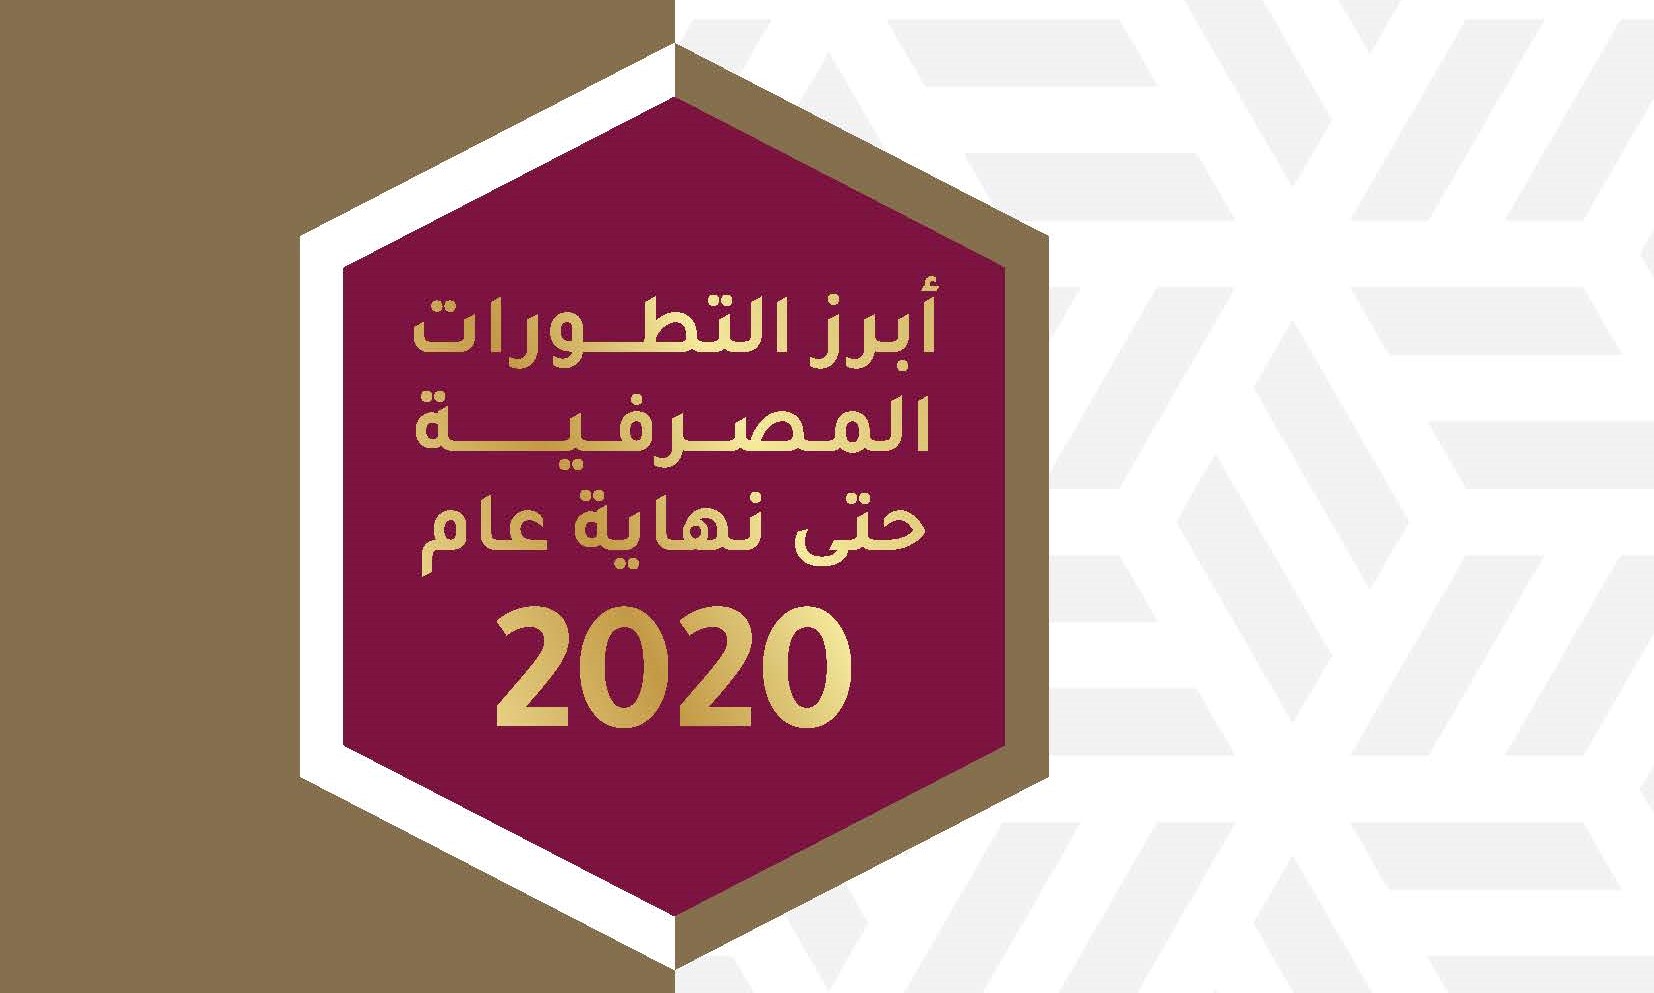 جمعية البنوك في الأردن تصدر تقرير “أبرز التطورات المصرفية حتى نهاية عام 2020”